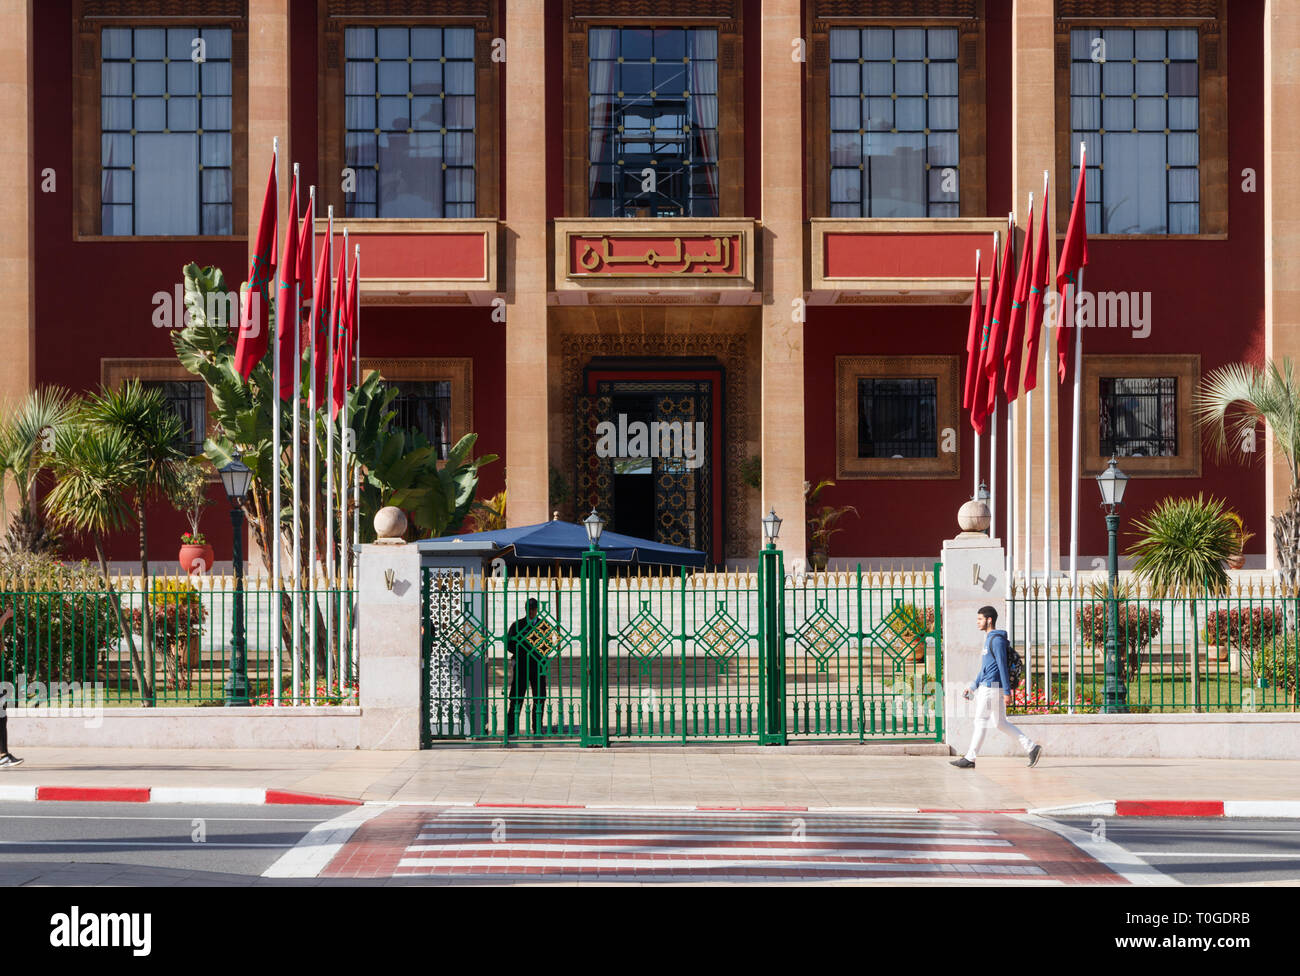 Avenue Mohammed V avec la façade de la Chambre des représentants s'appuyant sur une journée ensoleillée, Rabat, Maroc. Banque D'Images